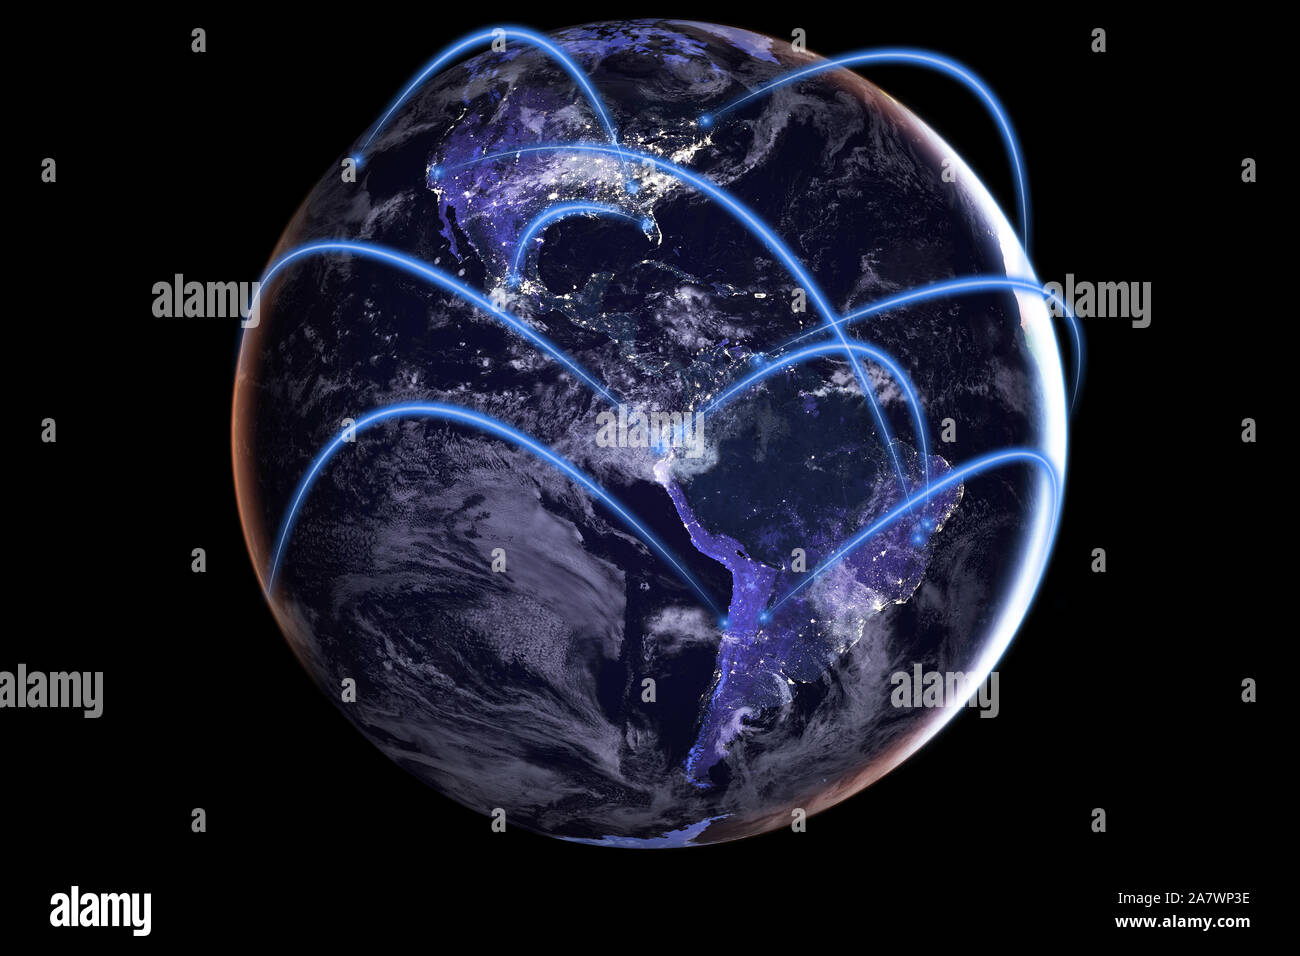 Globale Konnektivität Konzept mit der weltweiten Kommunikation rund um den Globus vom Weltraum aus gesehen - enthält Elemente, die von der NASA eingerichtet Stockfoto